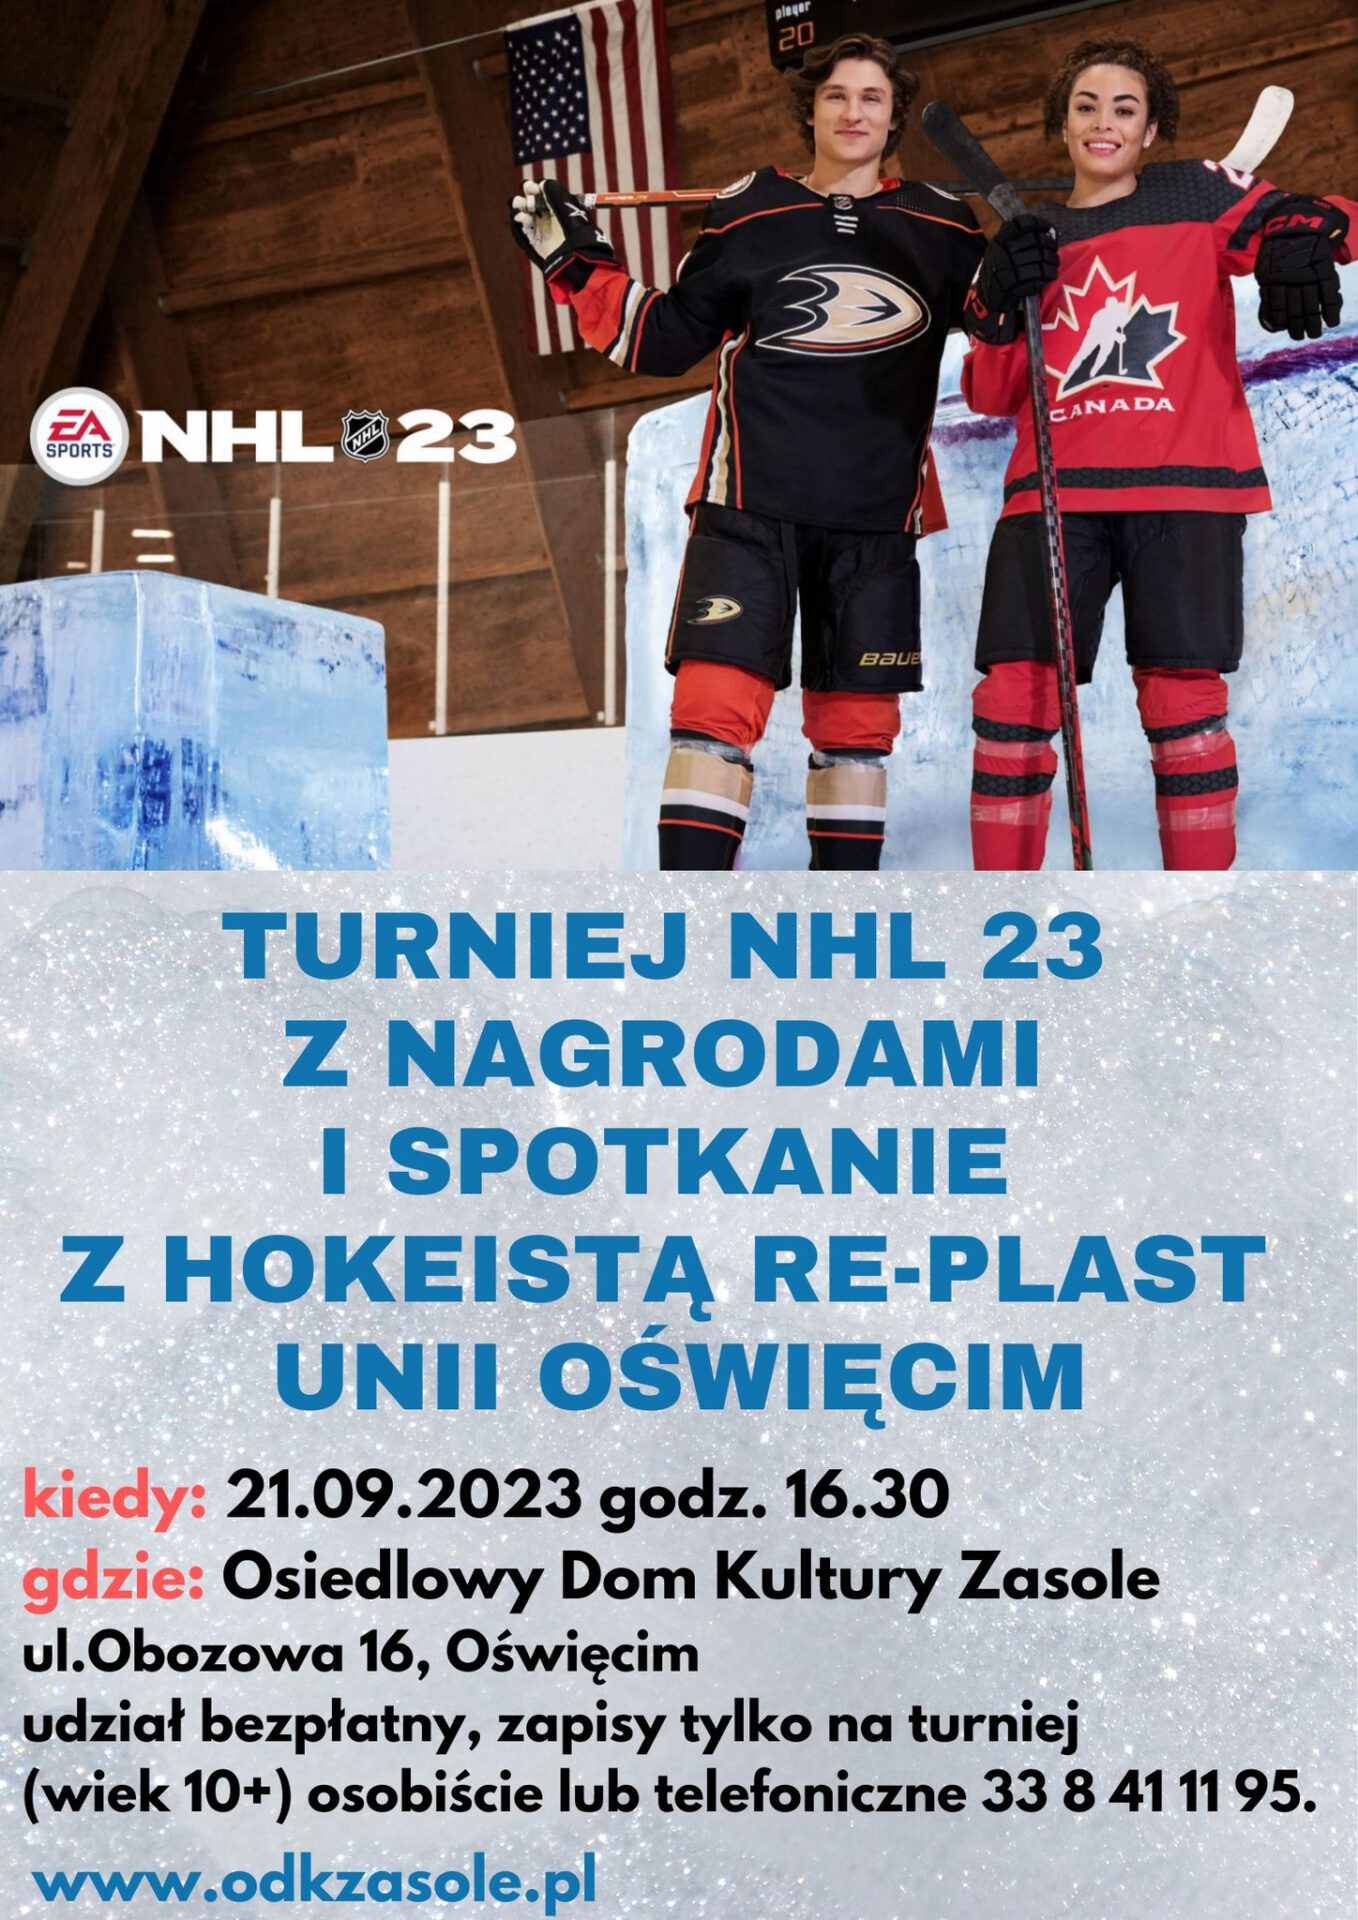 dwóch młodych hokeistów znajdujących się na lodowisku,trzymających hokejki ,zaproszenie do udziału w turnieju